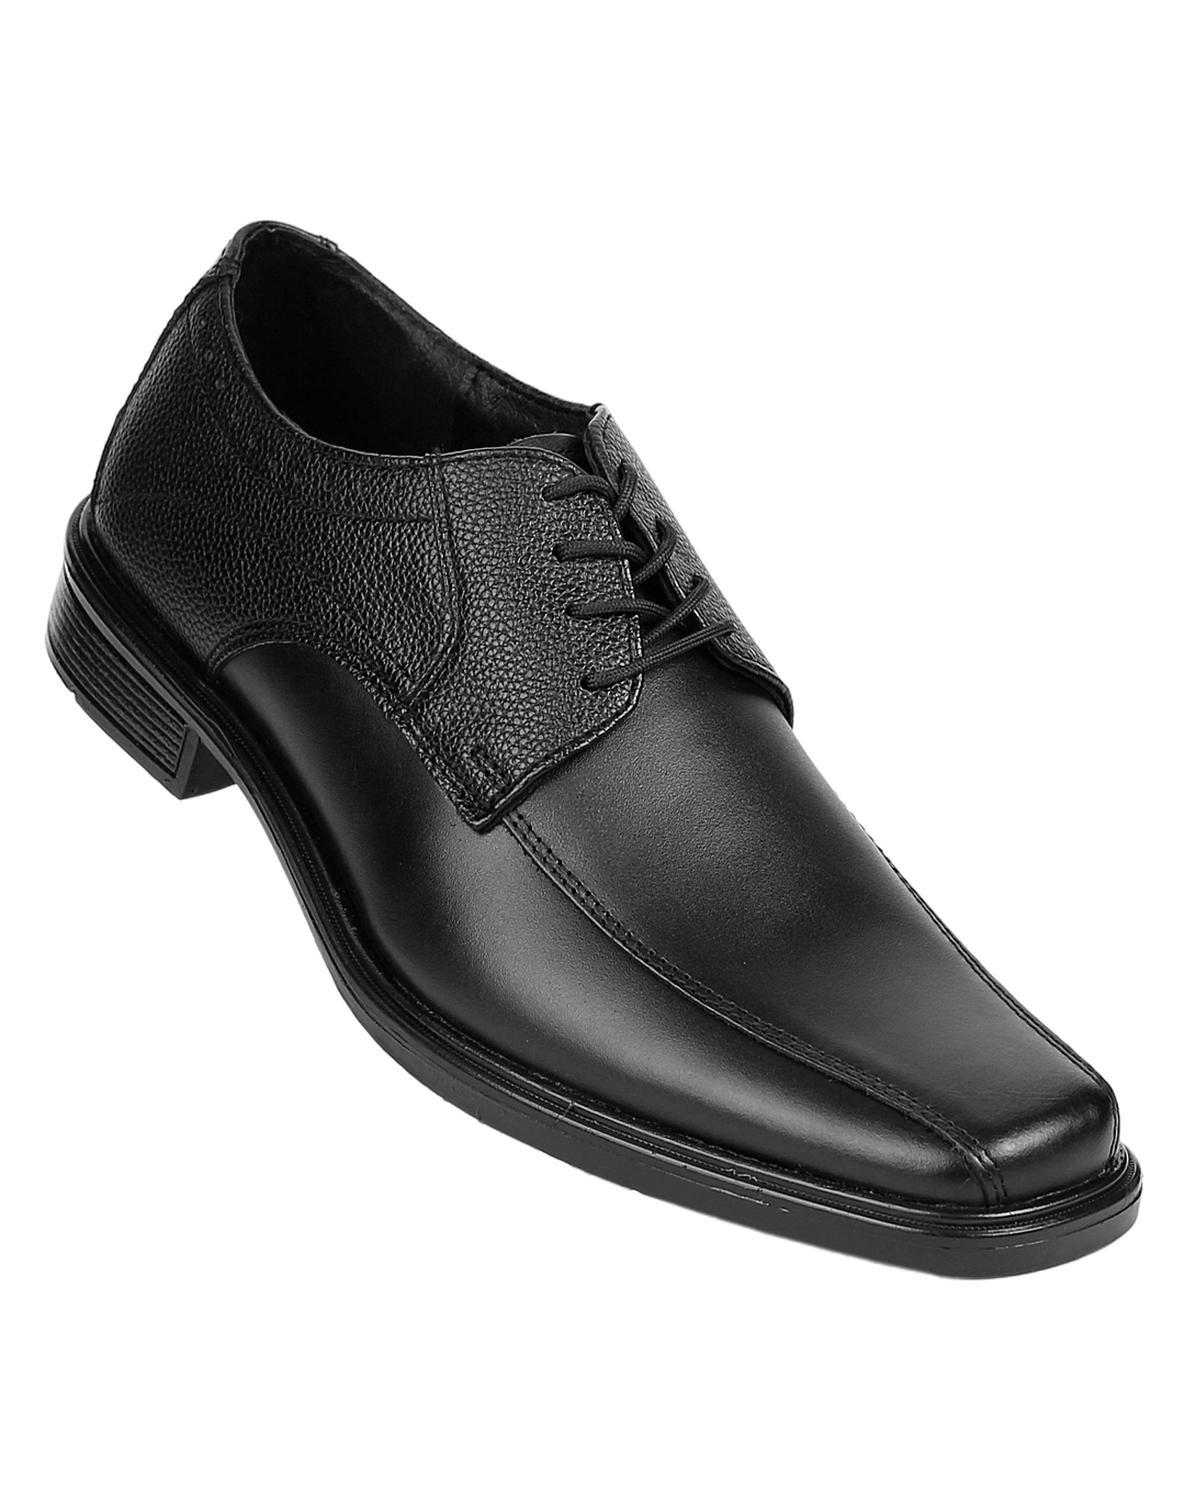 Zapato Vestir Oxford Hombre Negro Piel Stfashion 04703708